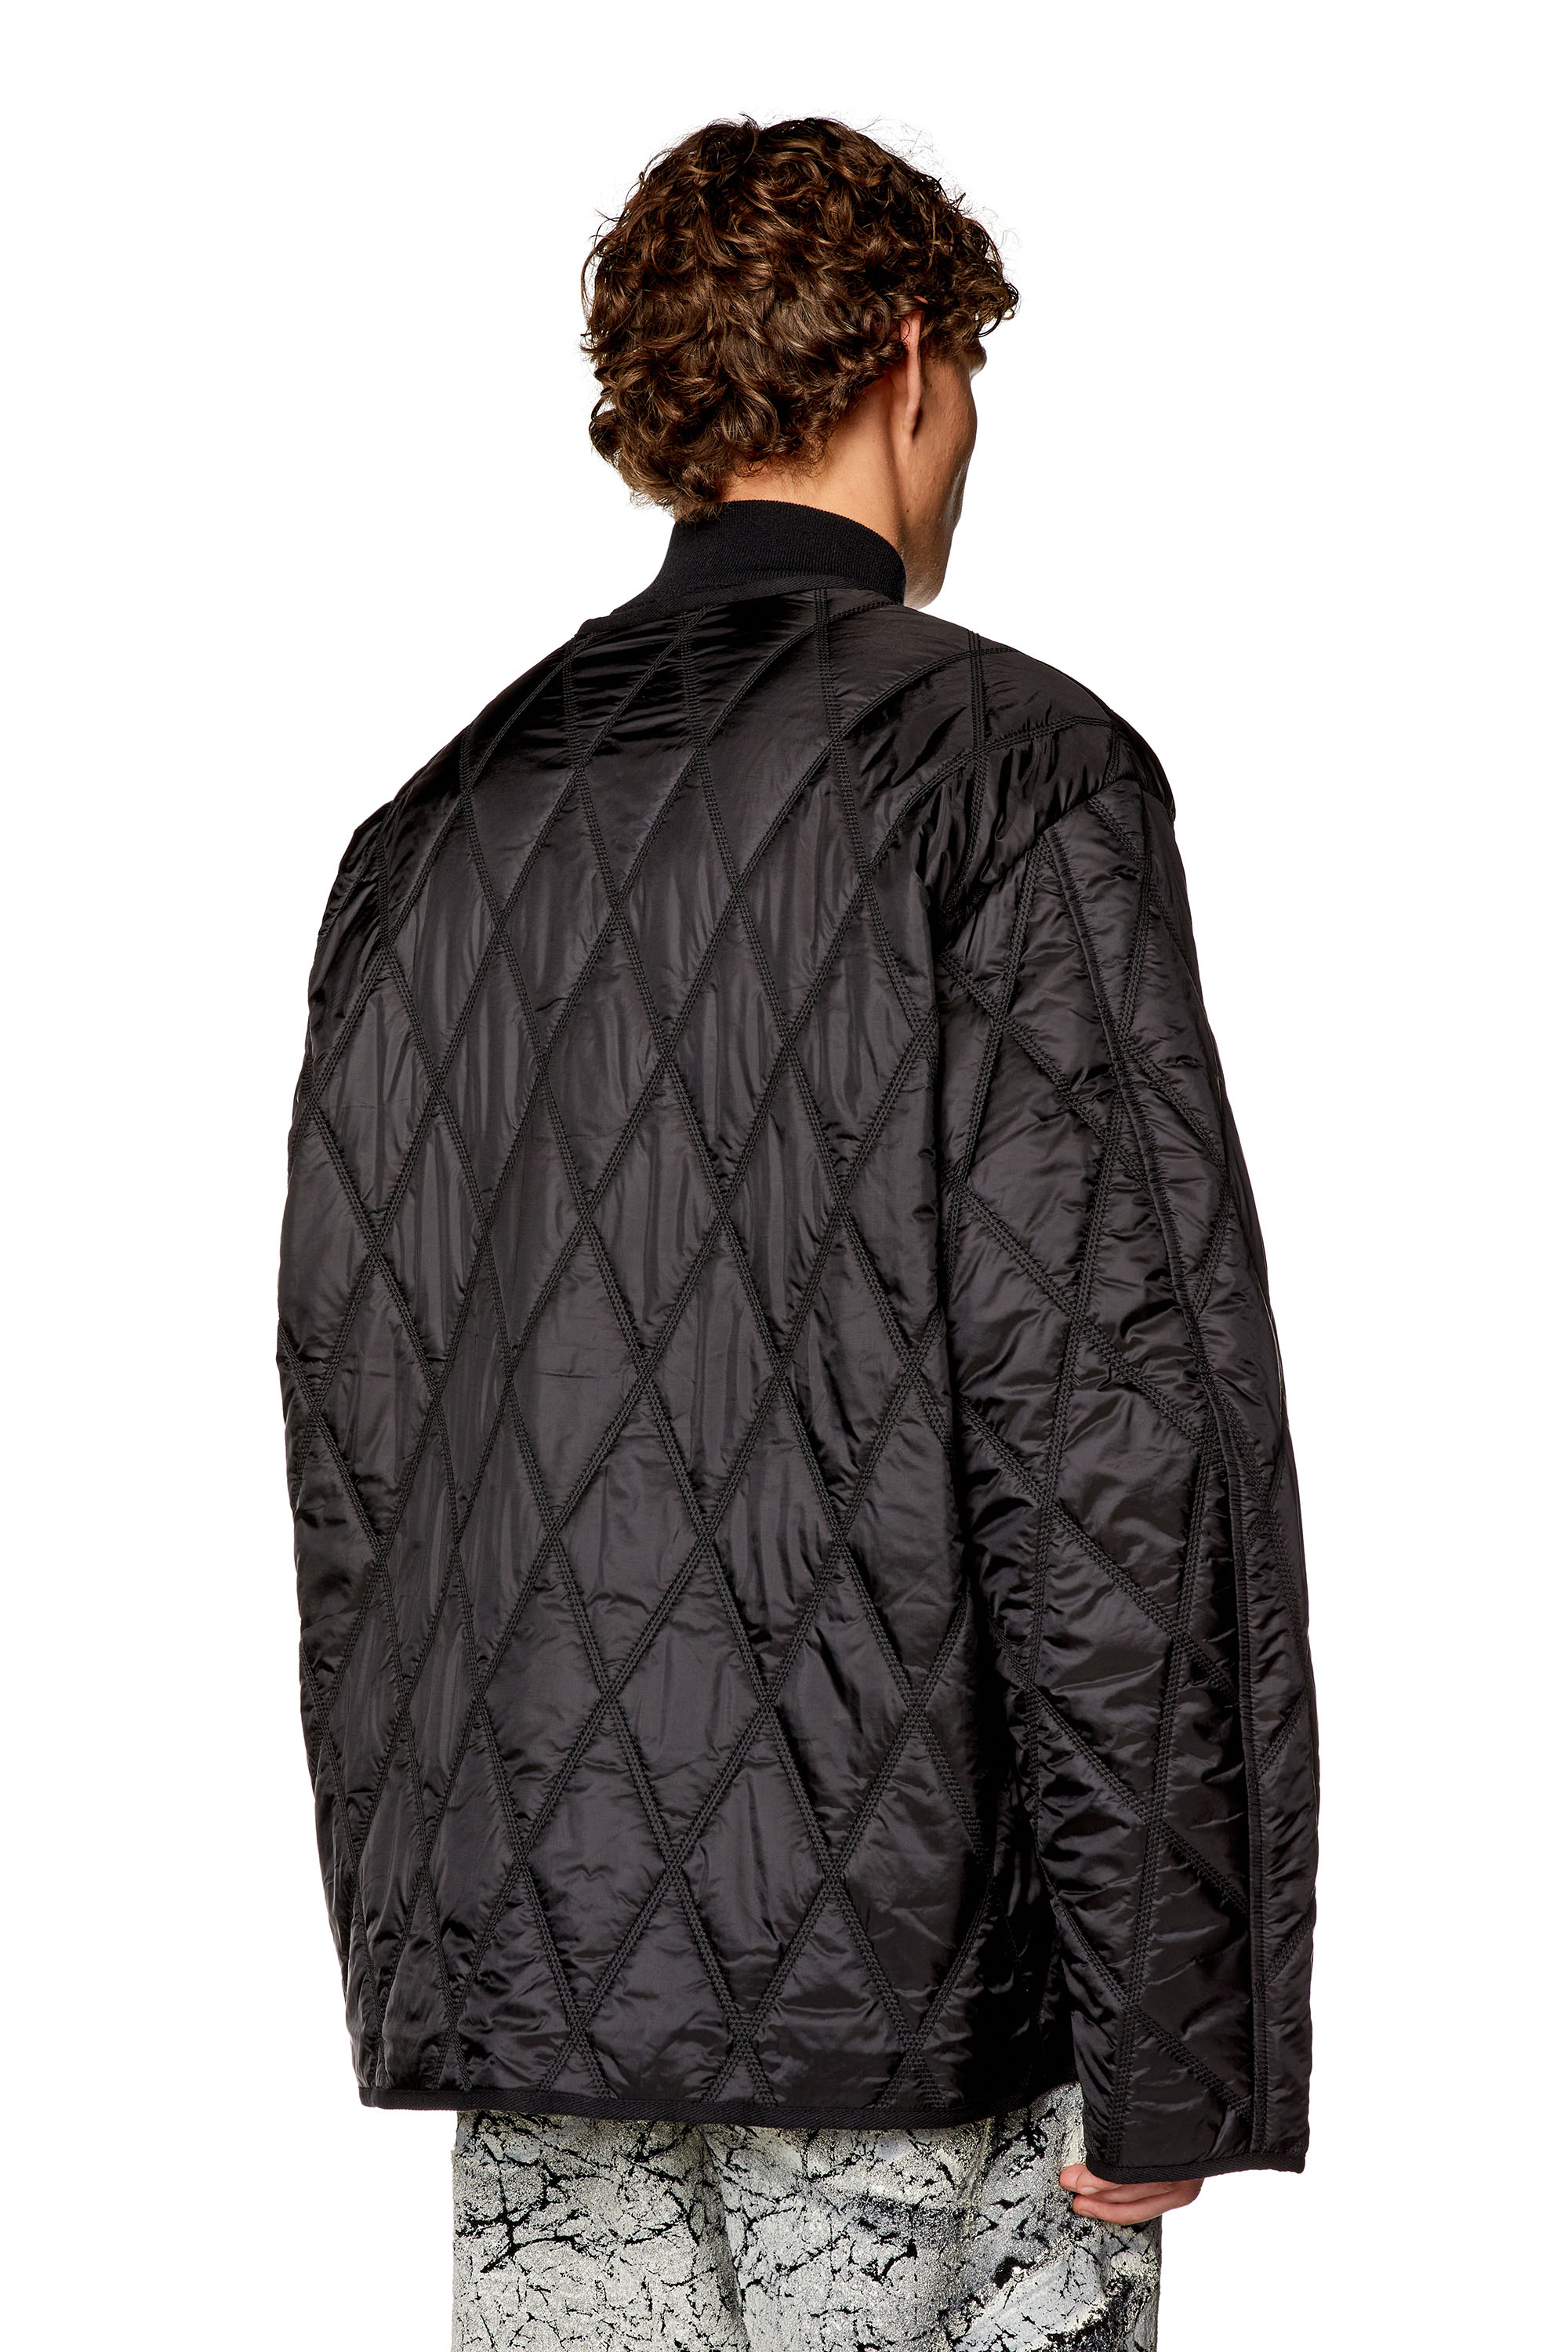 Diesel - J-BOY, Man V-neck jacket in quilted nylon in Black - Image 4